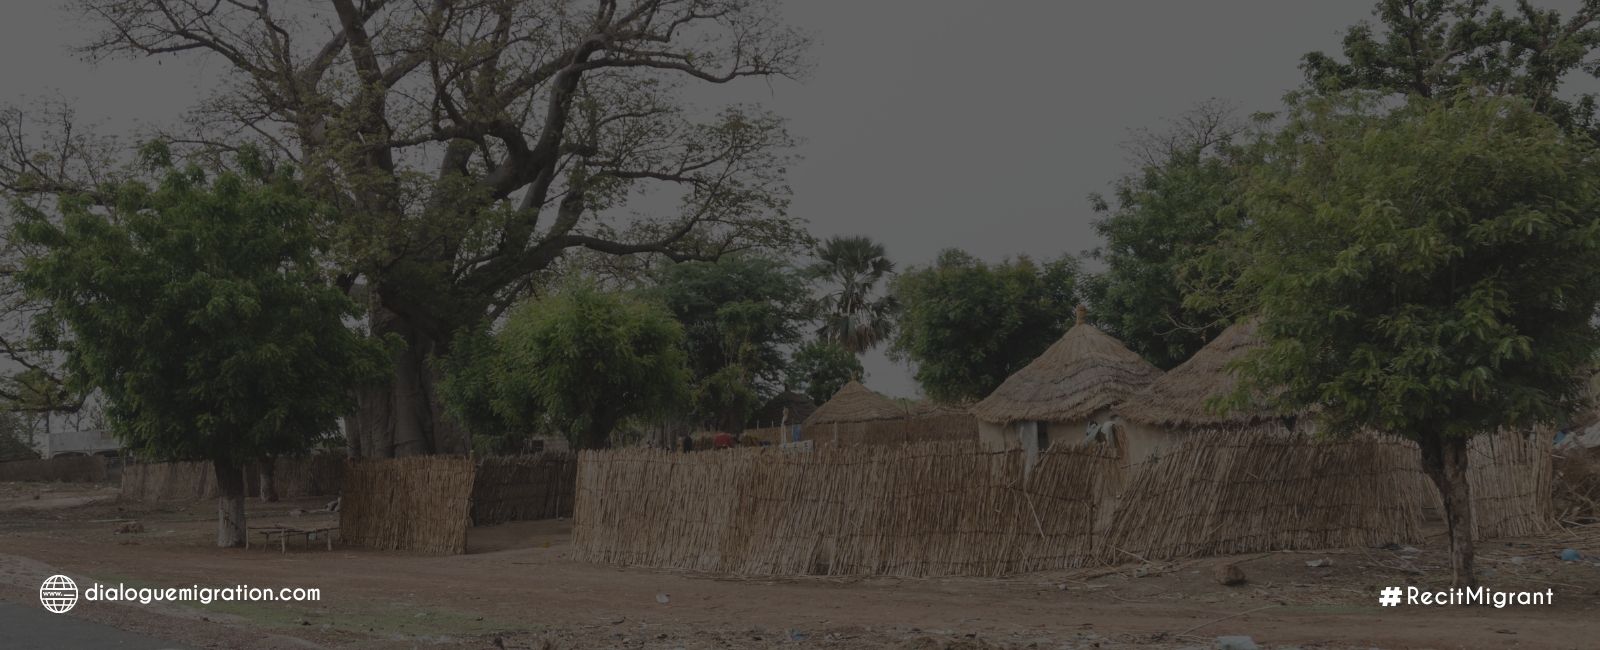 Impacts de la migration dans les régions de Ziguinchor et Kédougou du Sénégal